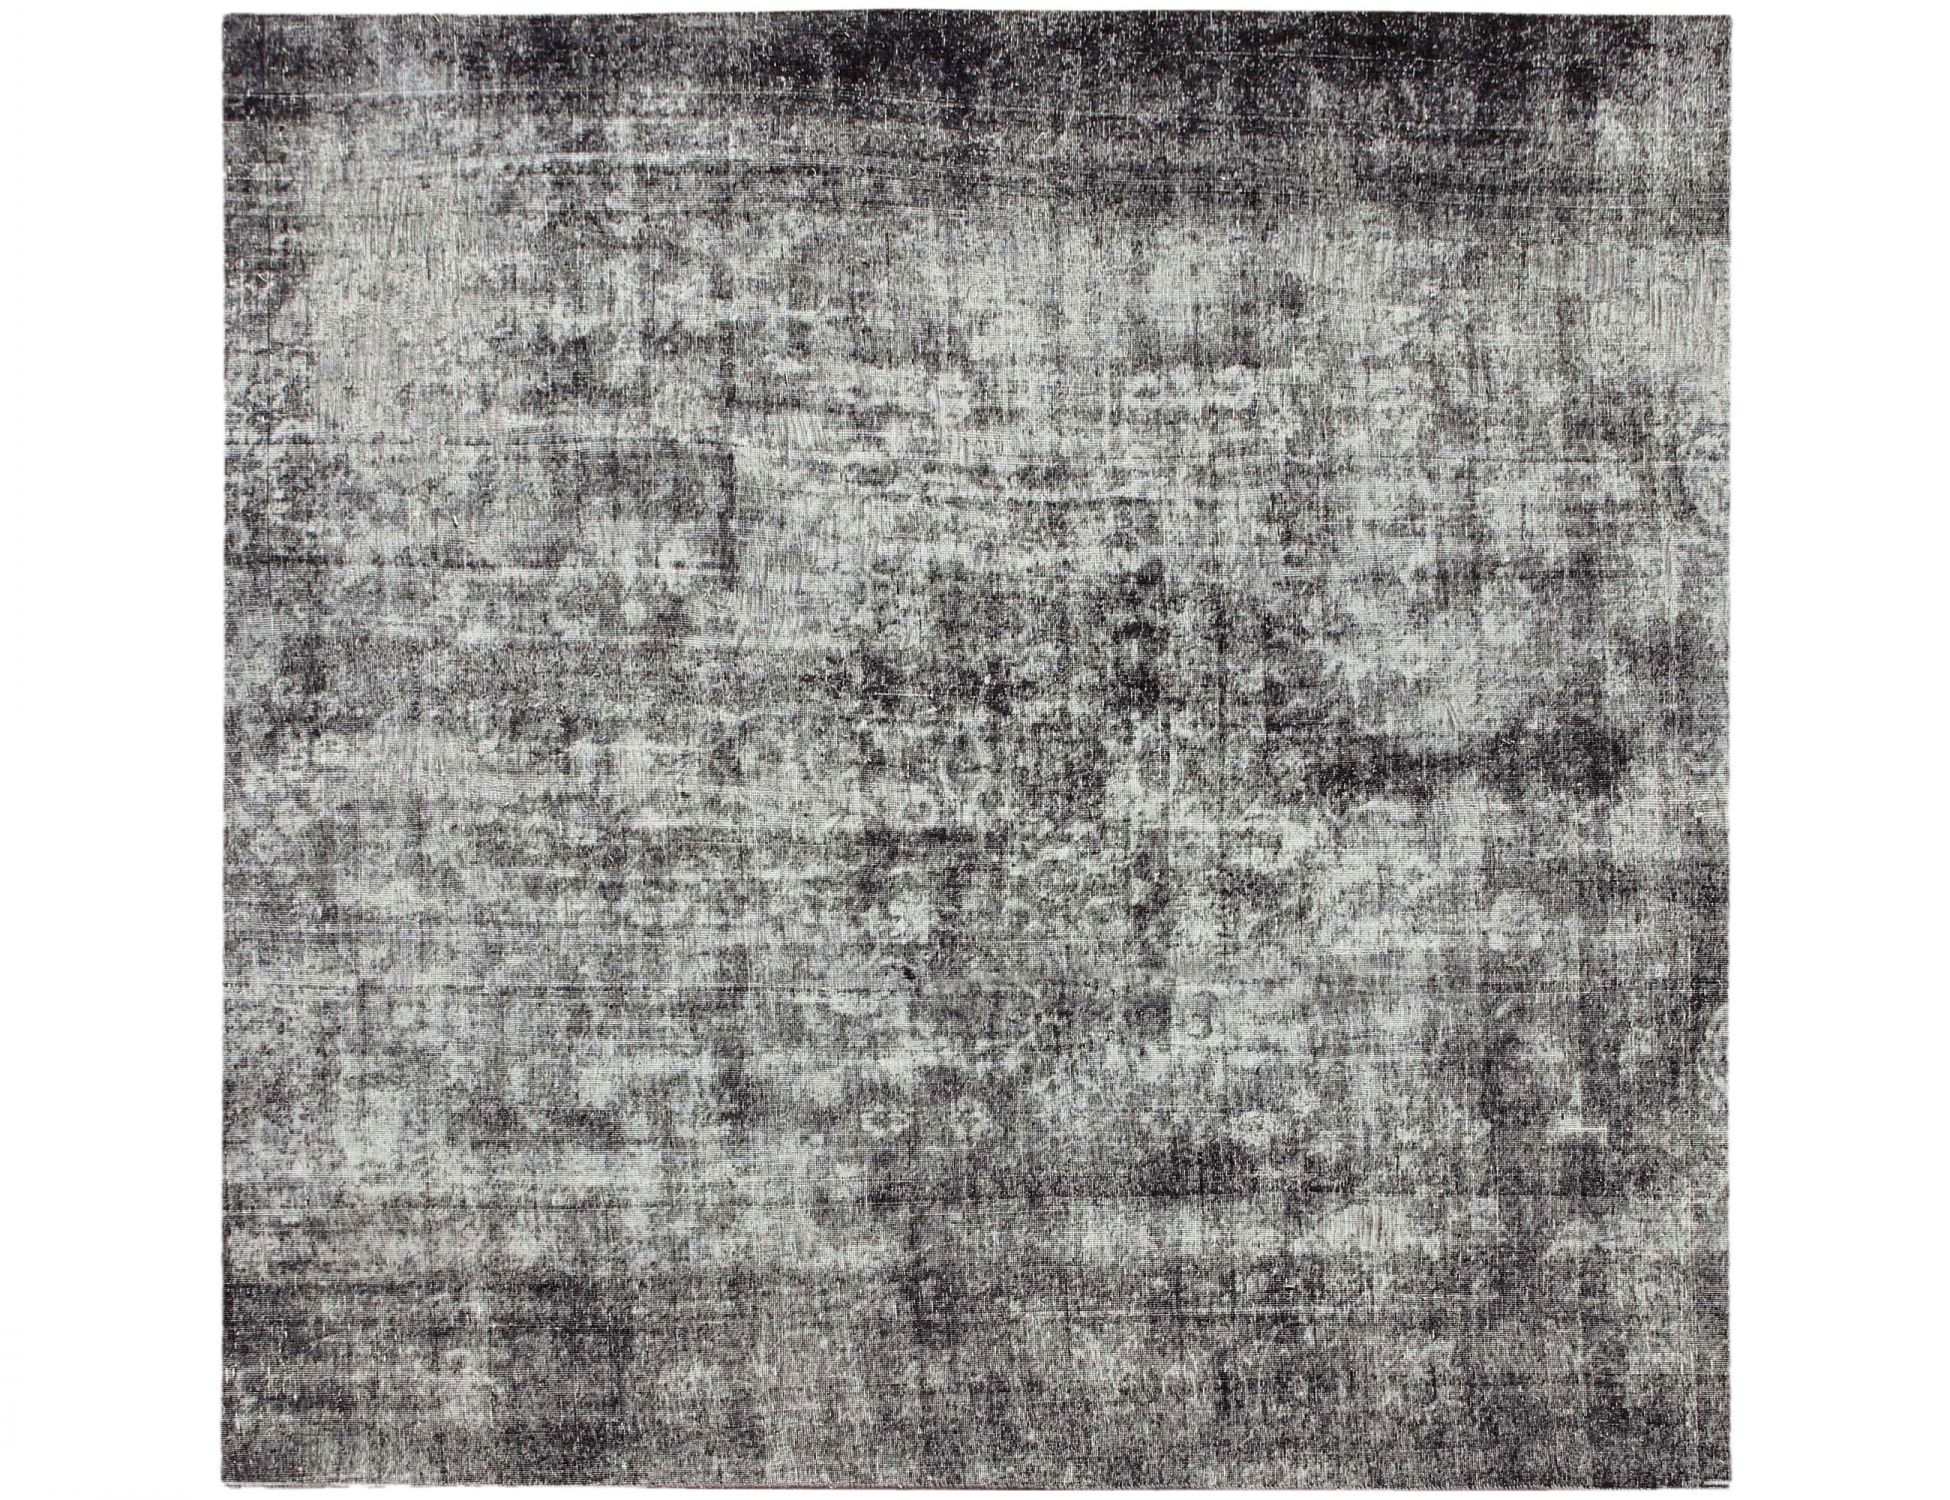 Persischer Vintage Teppich  grau <br/>260 x 260 cm